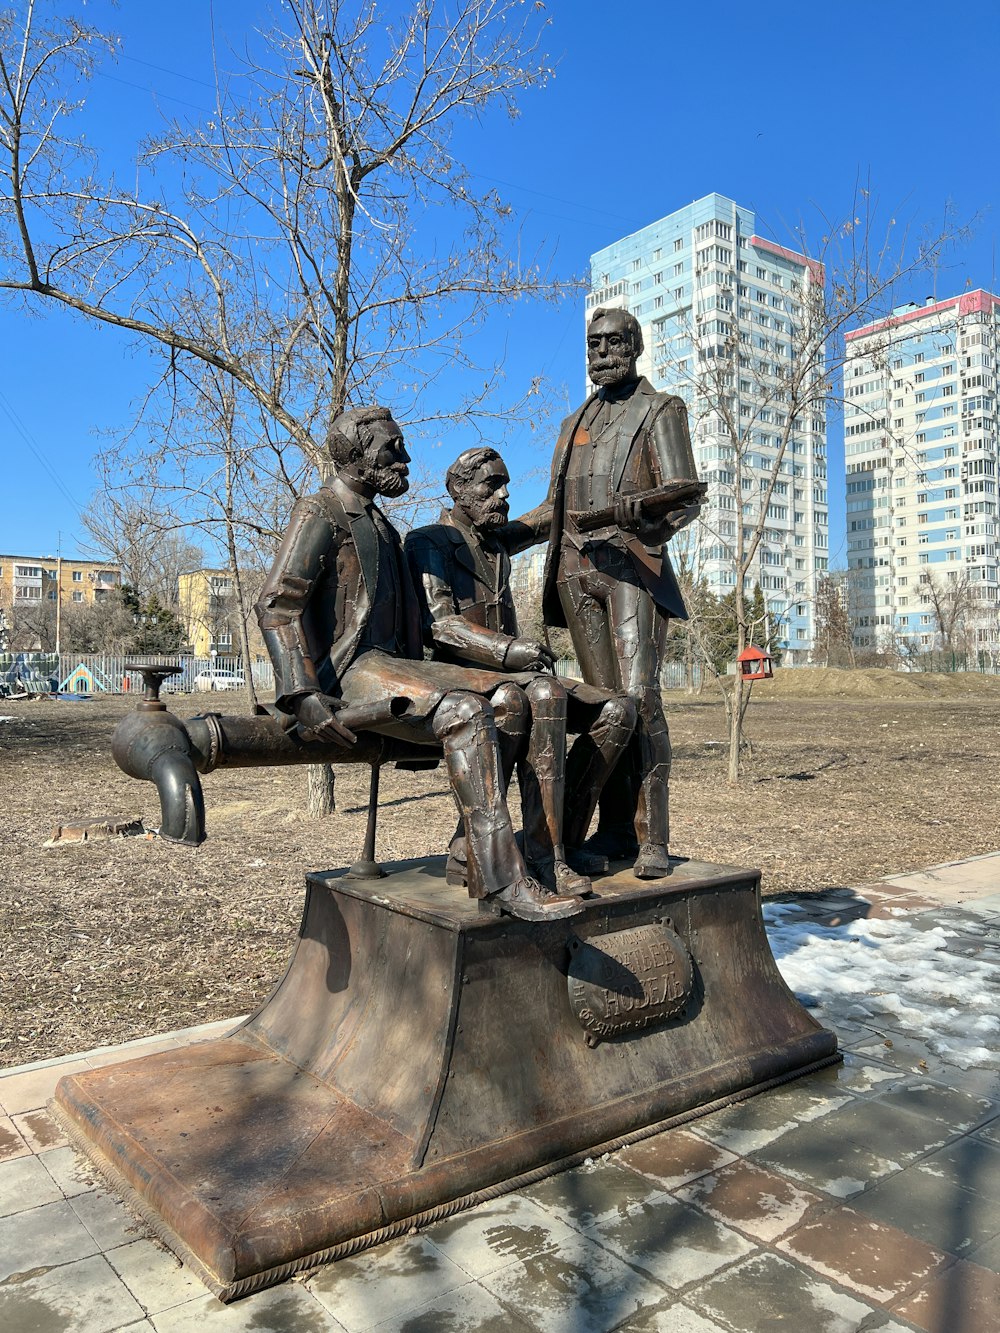 Eine Statue von drei Personen, die auf einer Bank sitzen